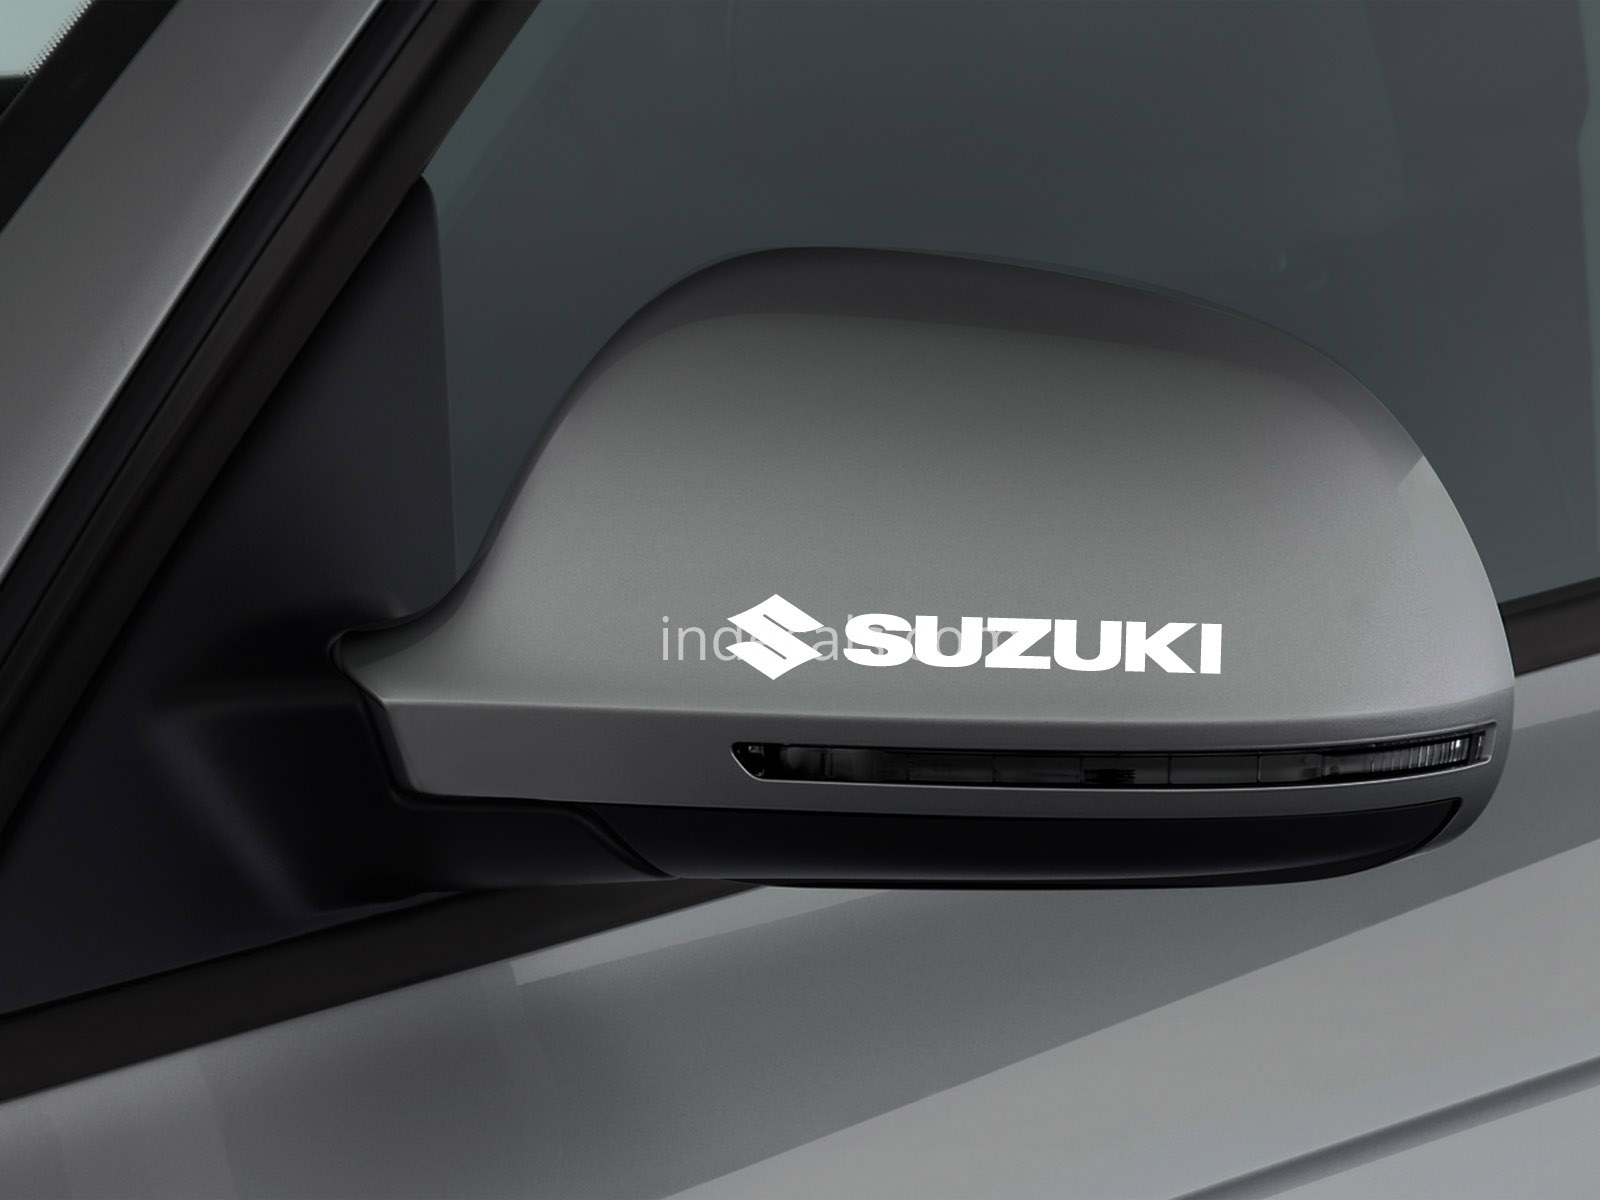 3 x Suzuki Stickers for Mirror - White